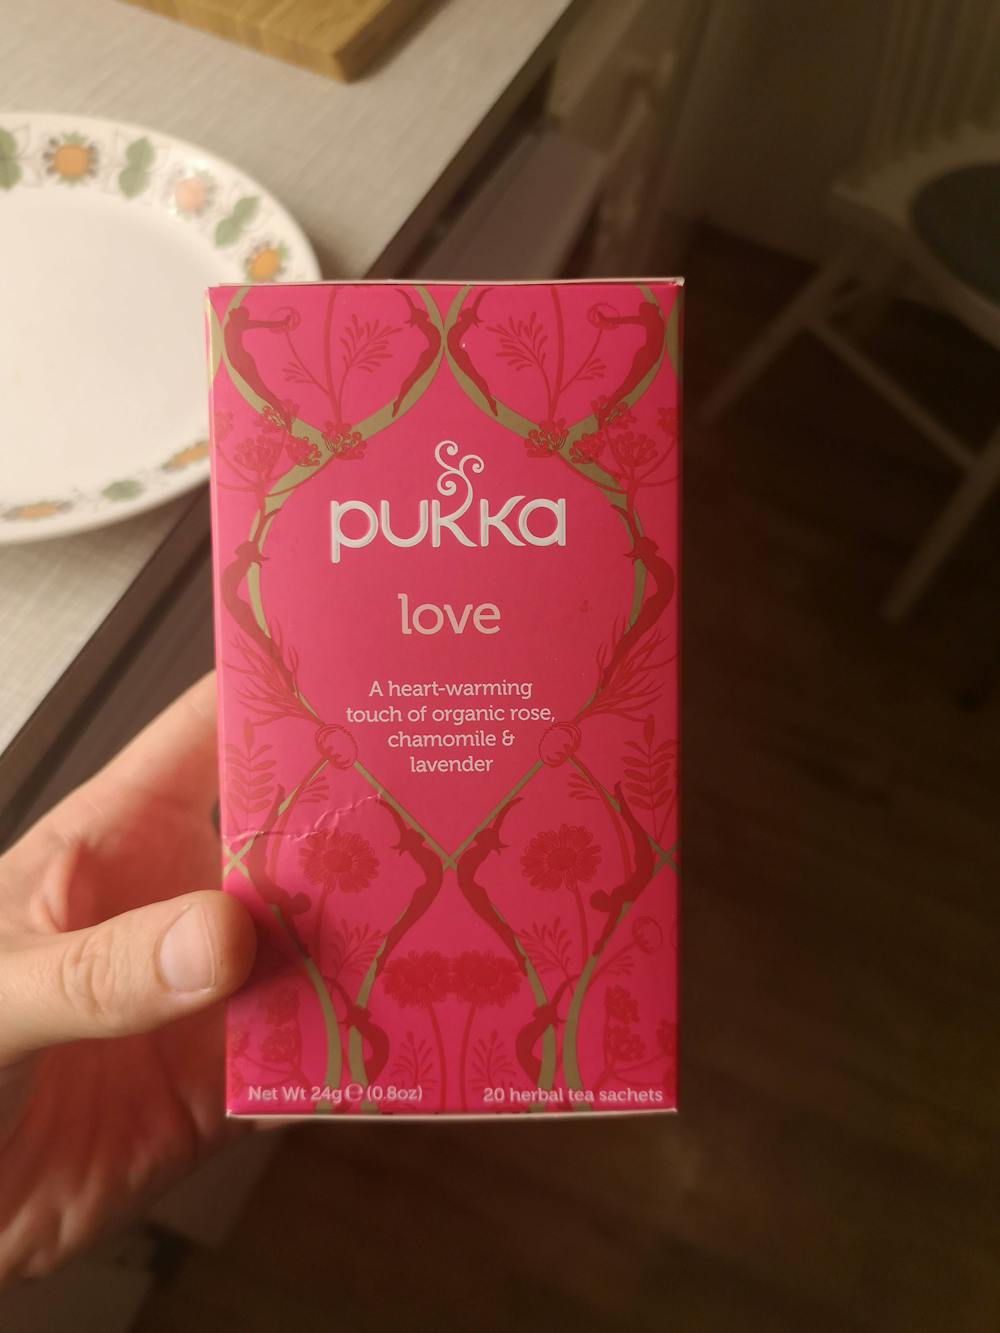 Love, Pukka